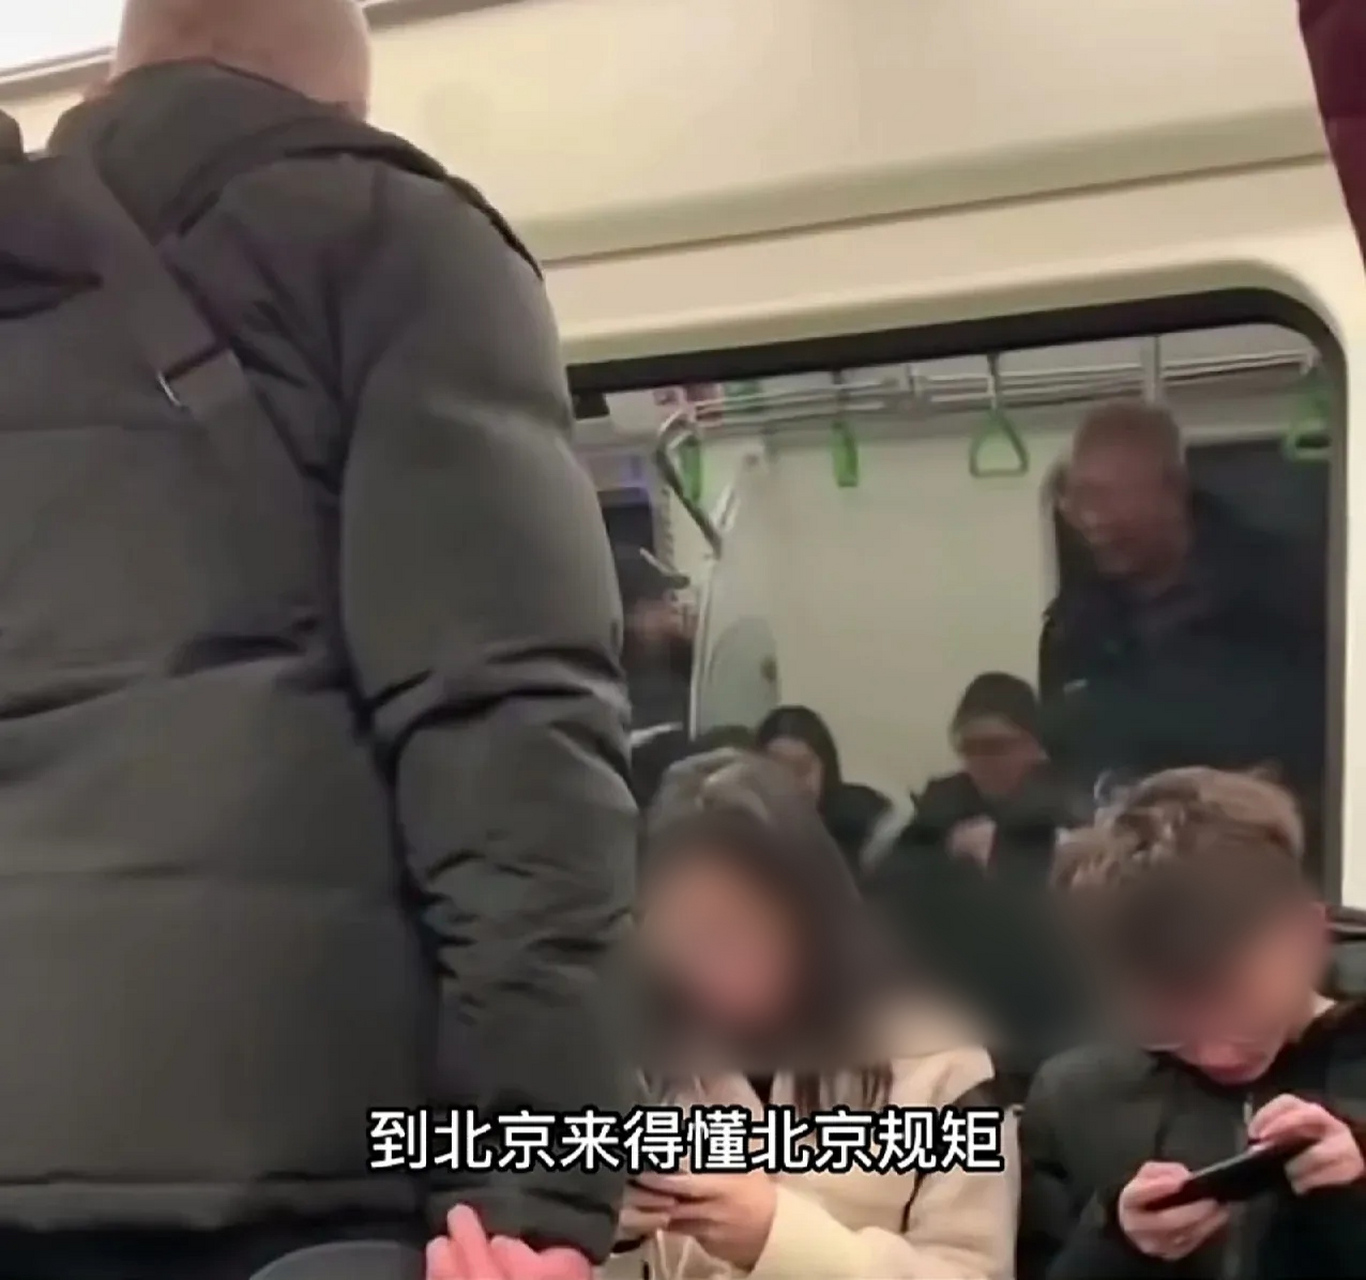 北京地铁上一位大爷语气严厉的对着一对年轻人道 到北京要懂北京人的